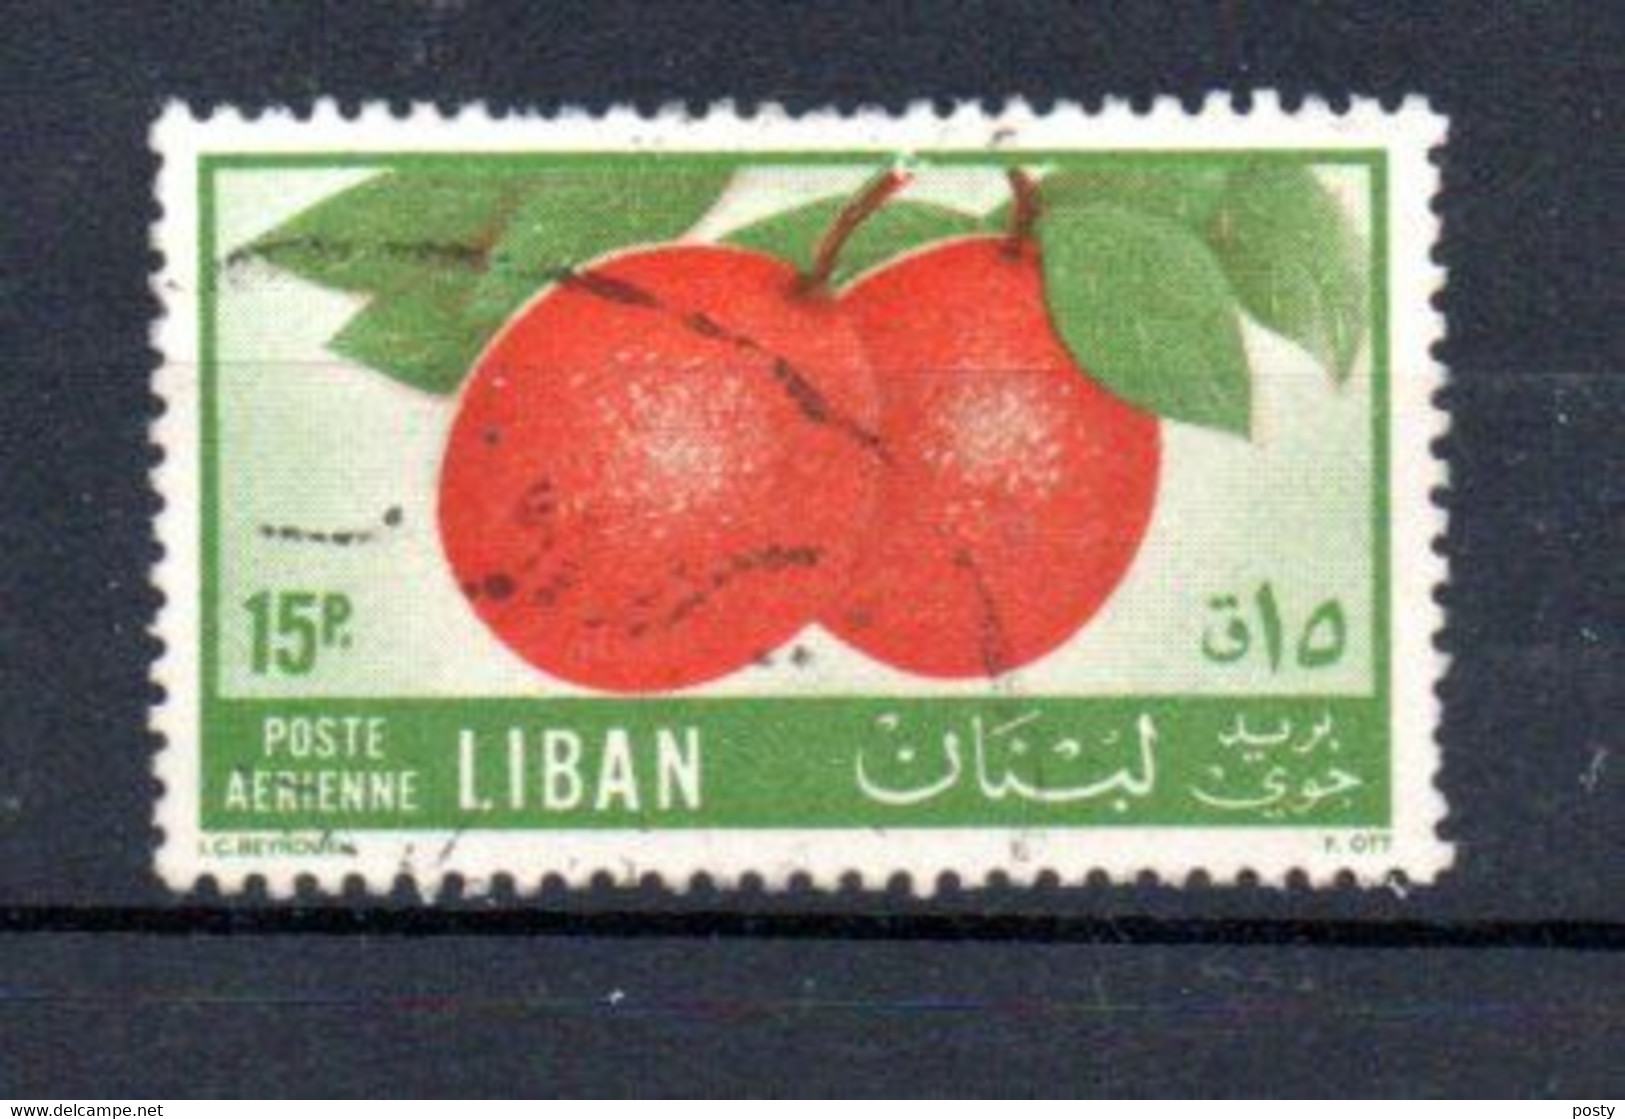 LIBAN - LEBANON - 1955 - POSTE AERIENNE - AIRMAIL - ORANGES - Oblitéré - Used - 15p - - Liban